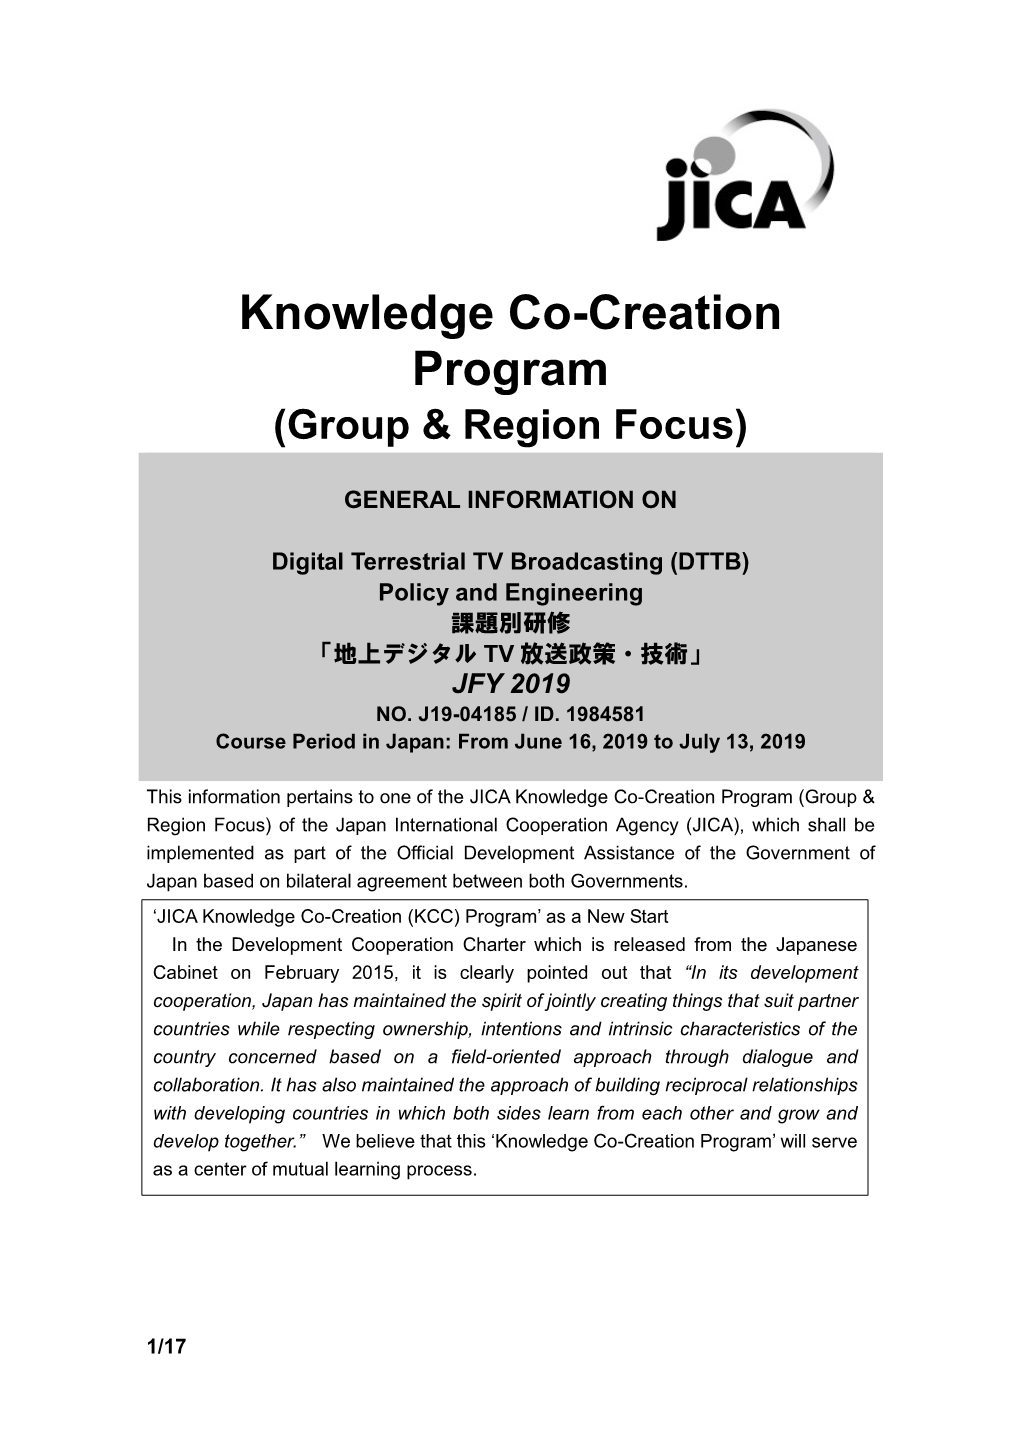 Group & Region Focus